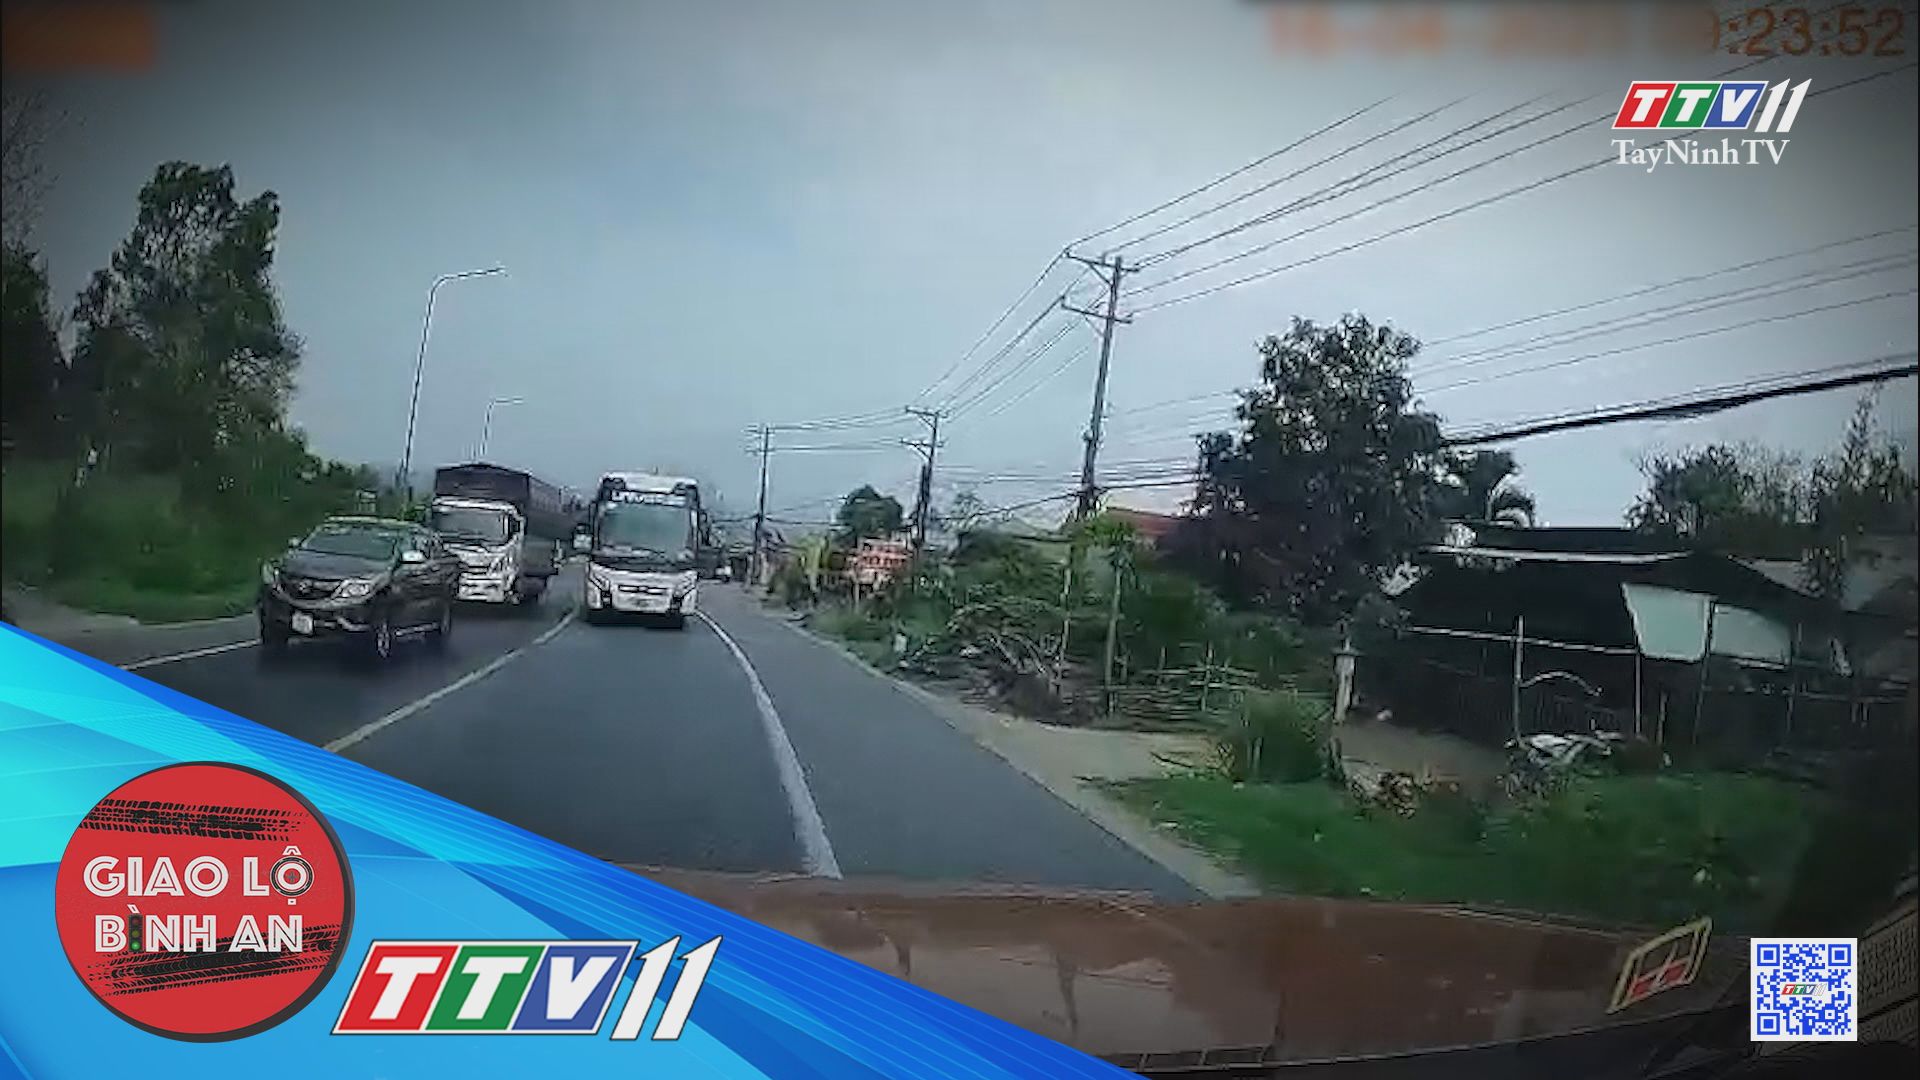 Cẩn trọng khi vượt xe | Giao lộ bình an | TayNinhTV